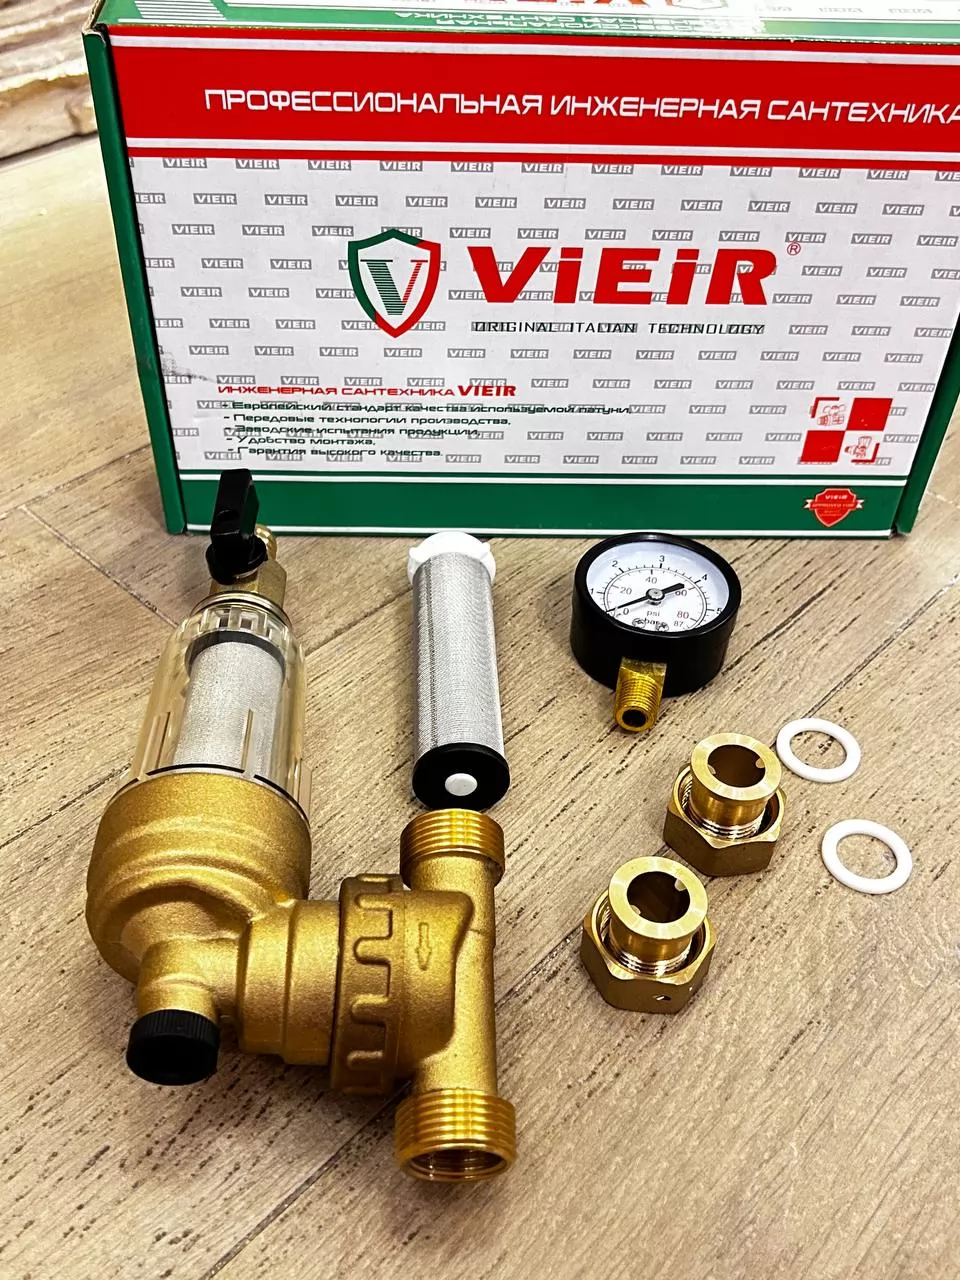 Фильтр свободного вращения с манометром для холодной воды Vieir JC148